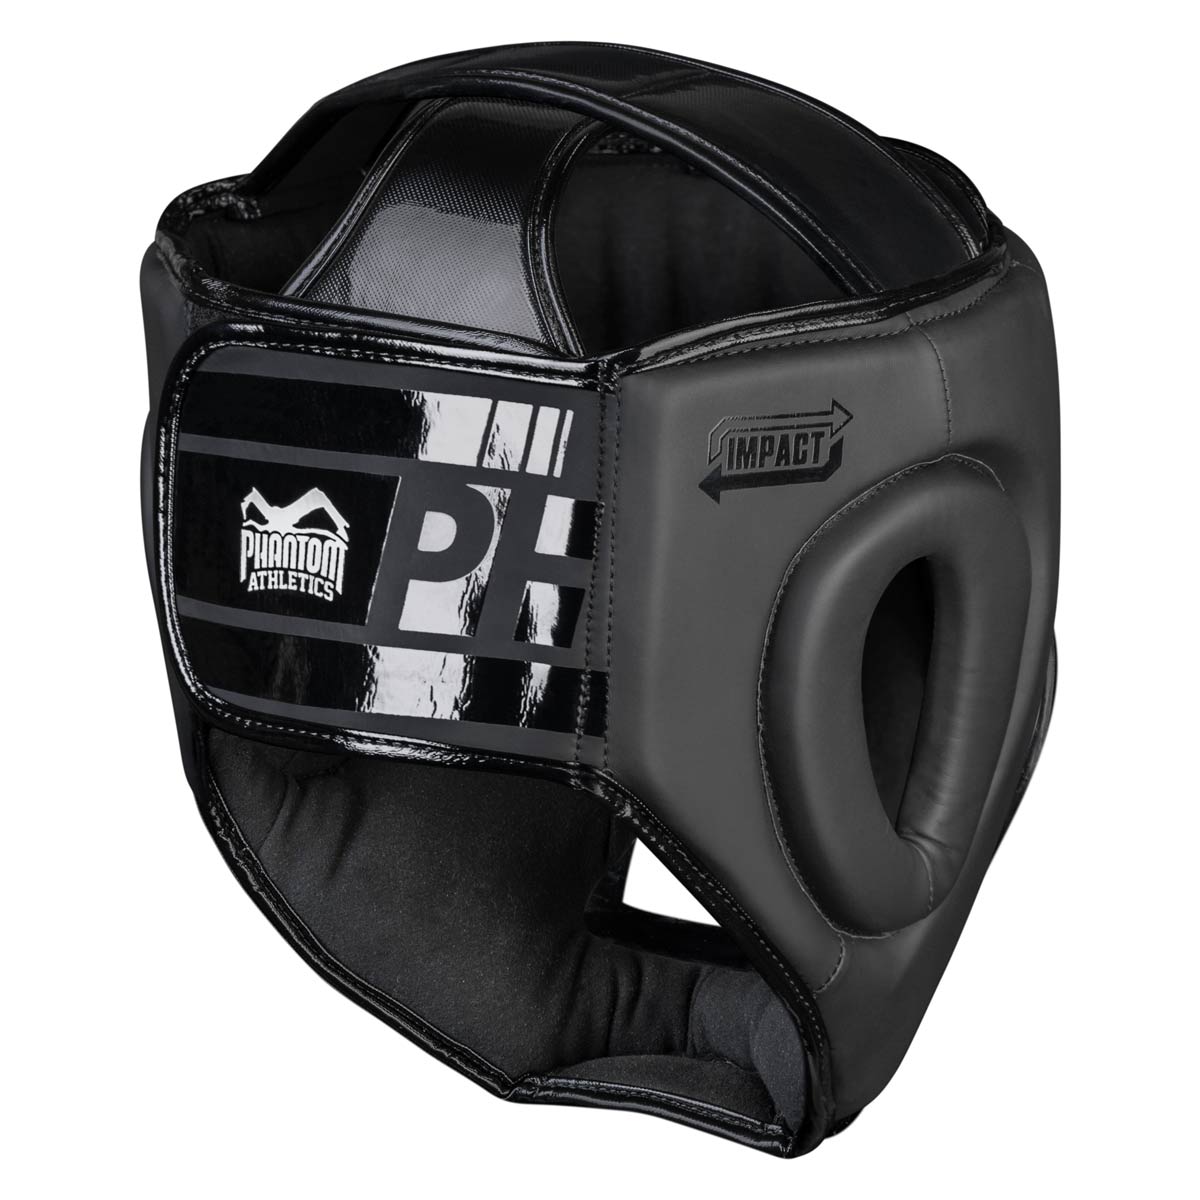 Der Phantom Apex CAGE Kopfschutz in der Rückansicht mit großem Klettverschluss für optimalen Halt im Training